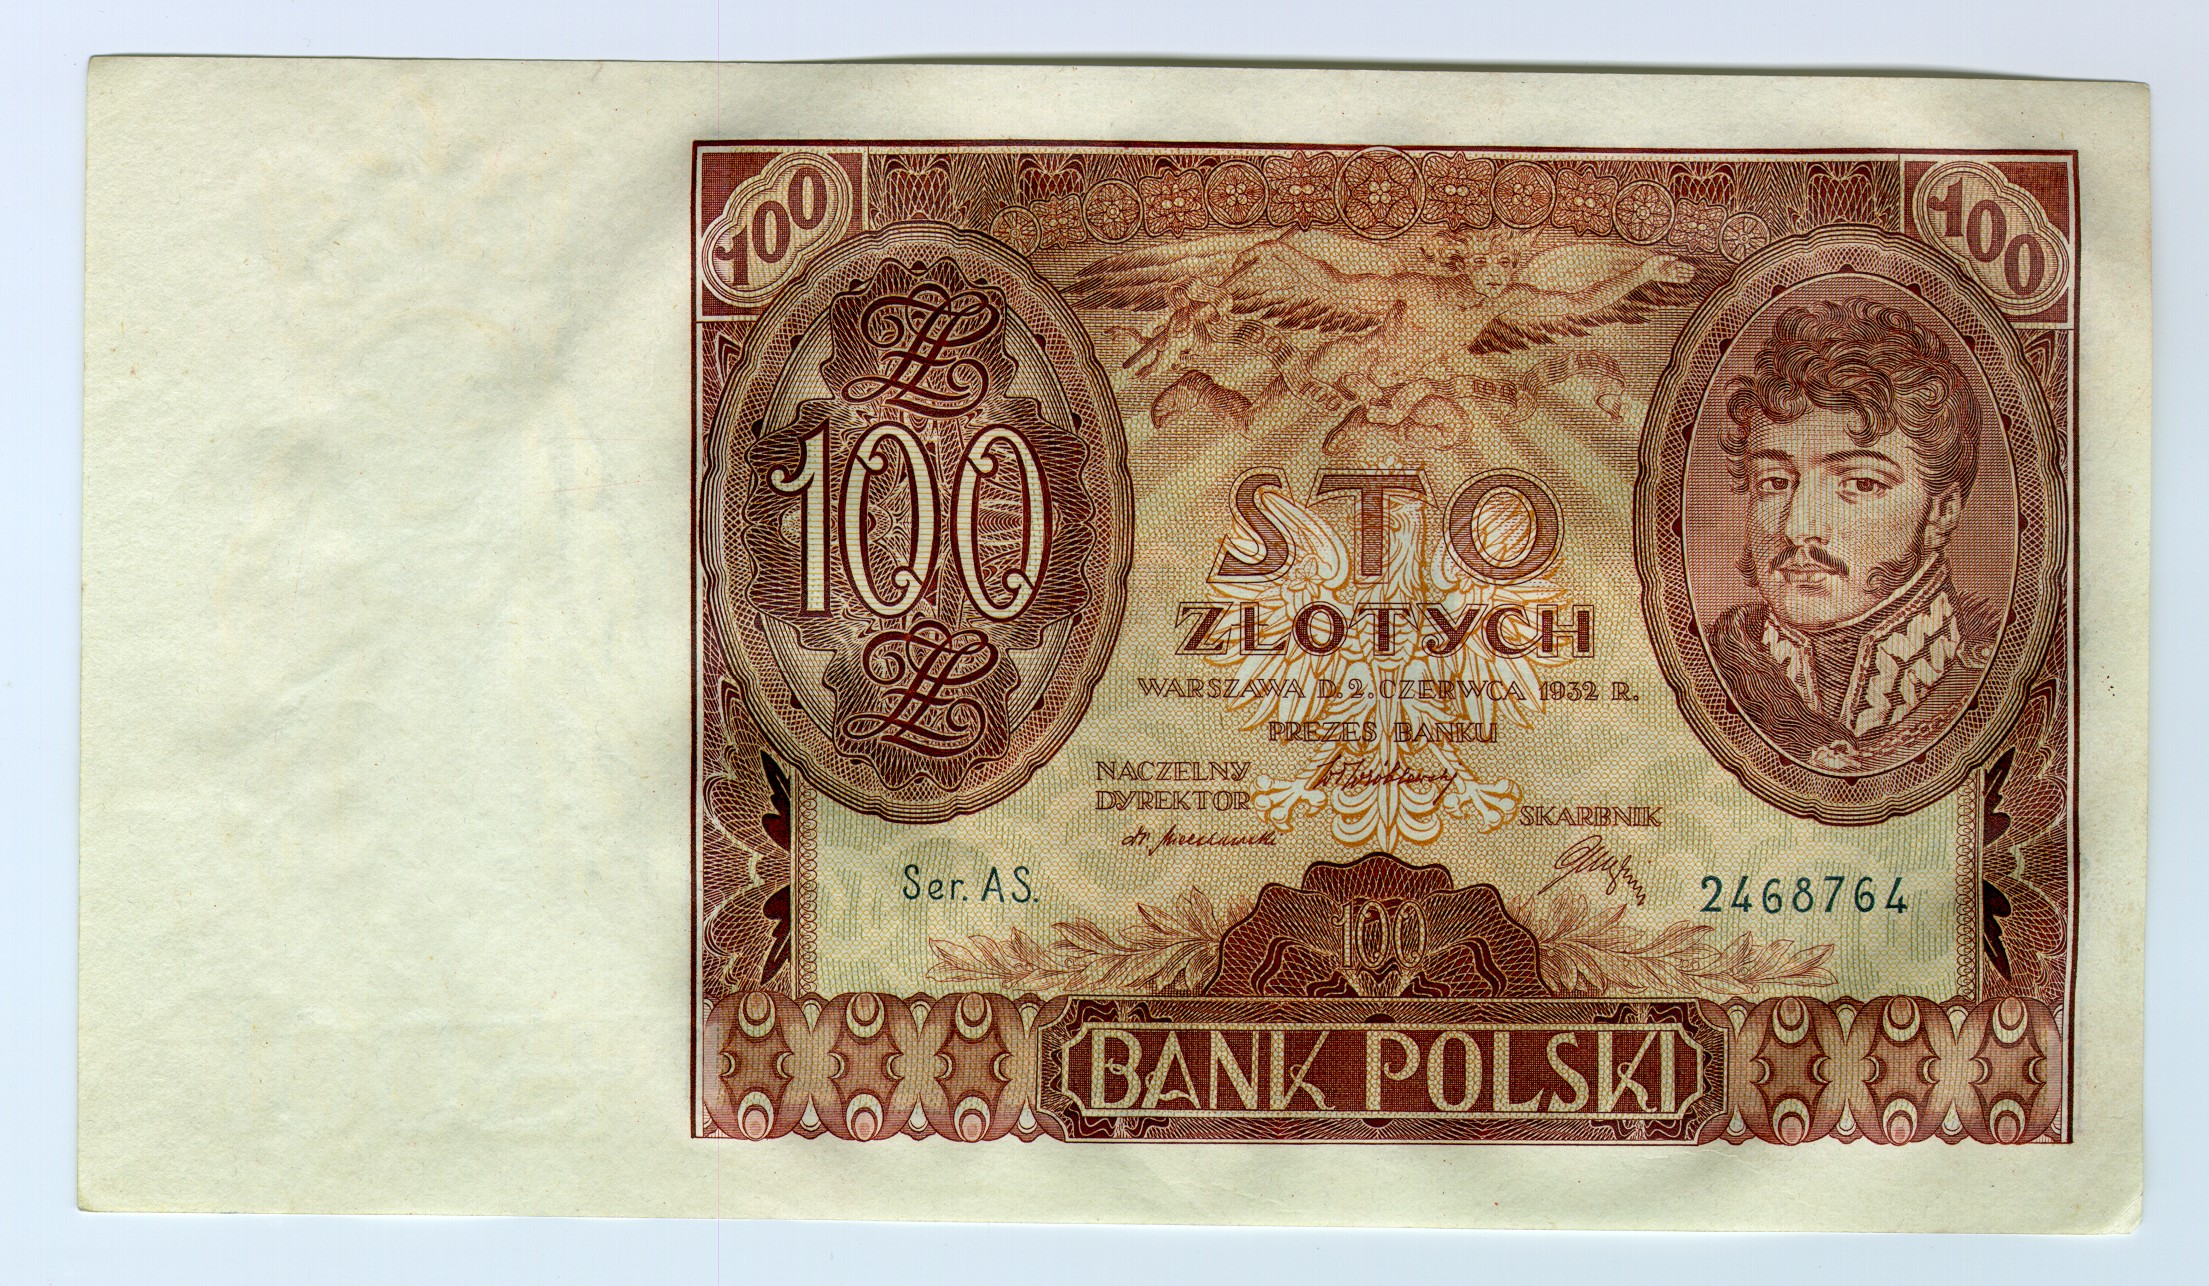 Banknot o nominale 100 złotych z wizerunkiem księcia Józefa Poniatowskiego, 1934 r. – przednia strona